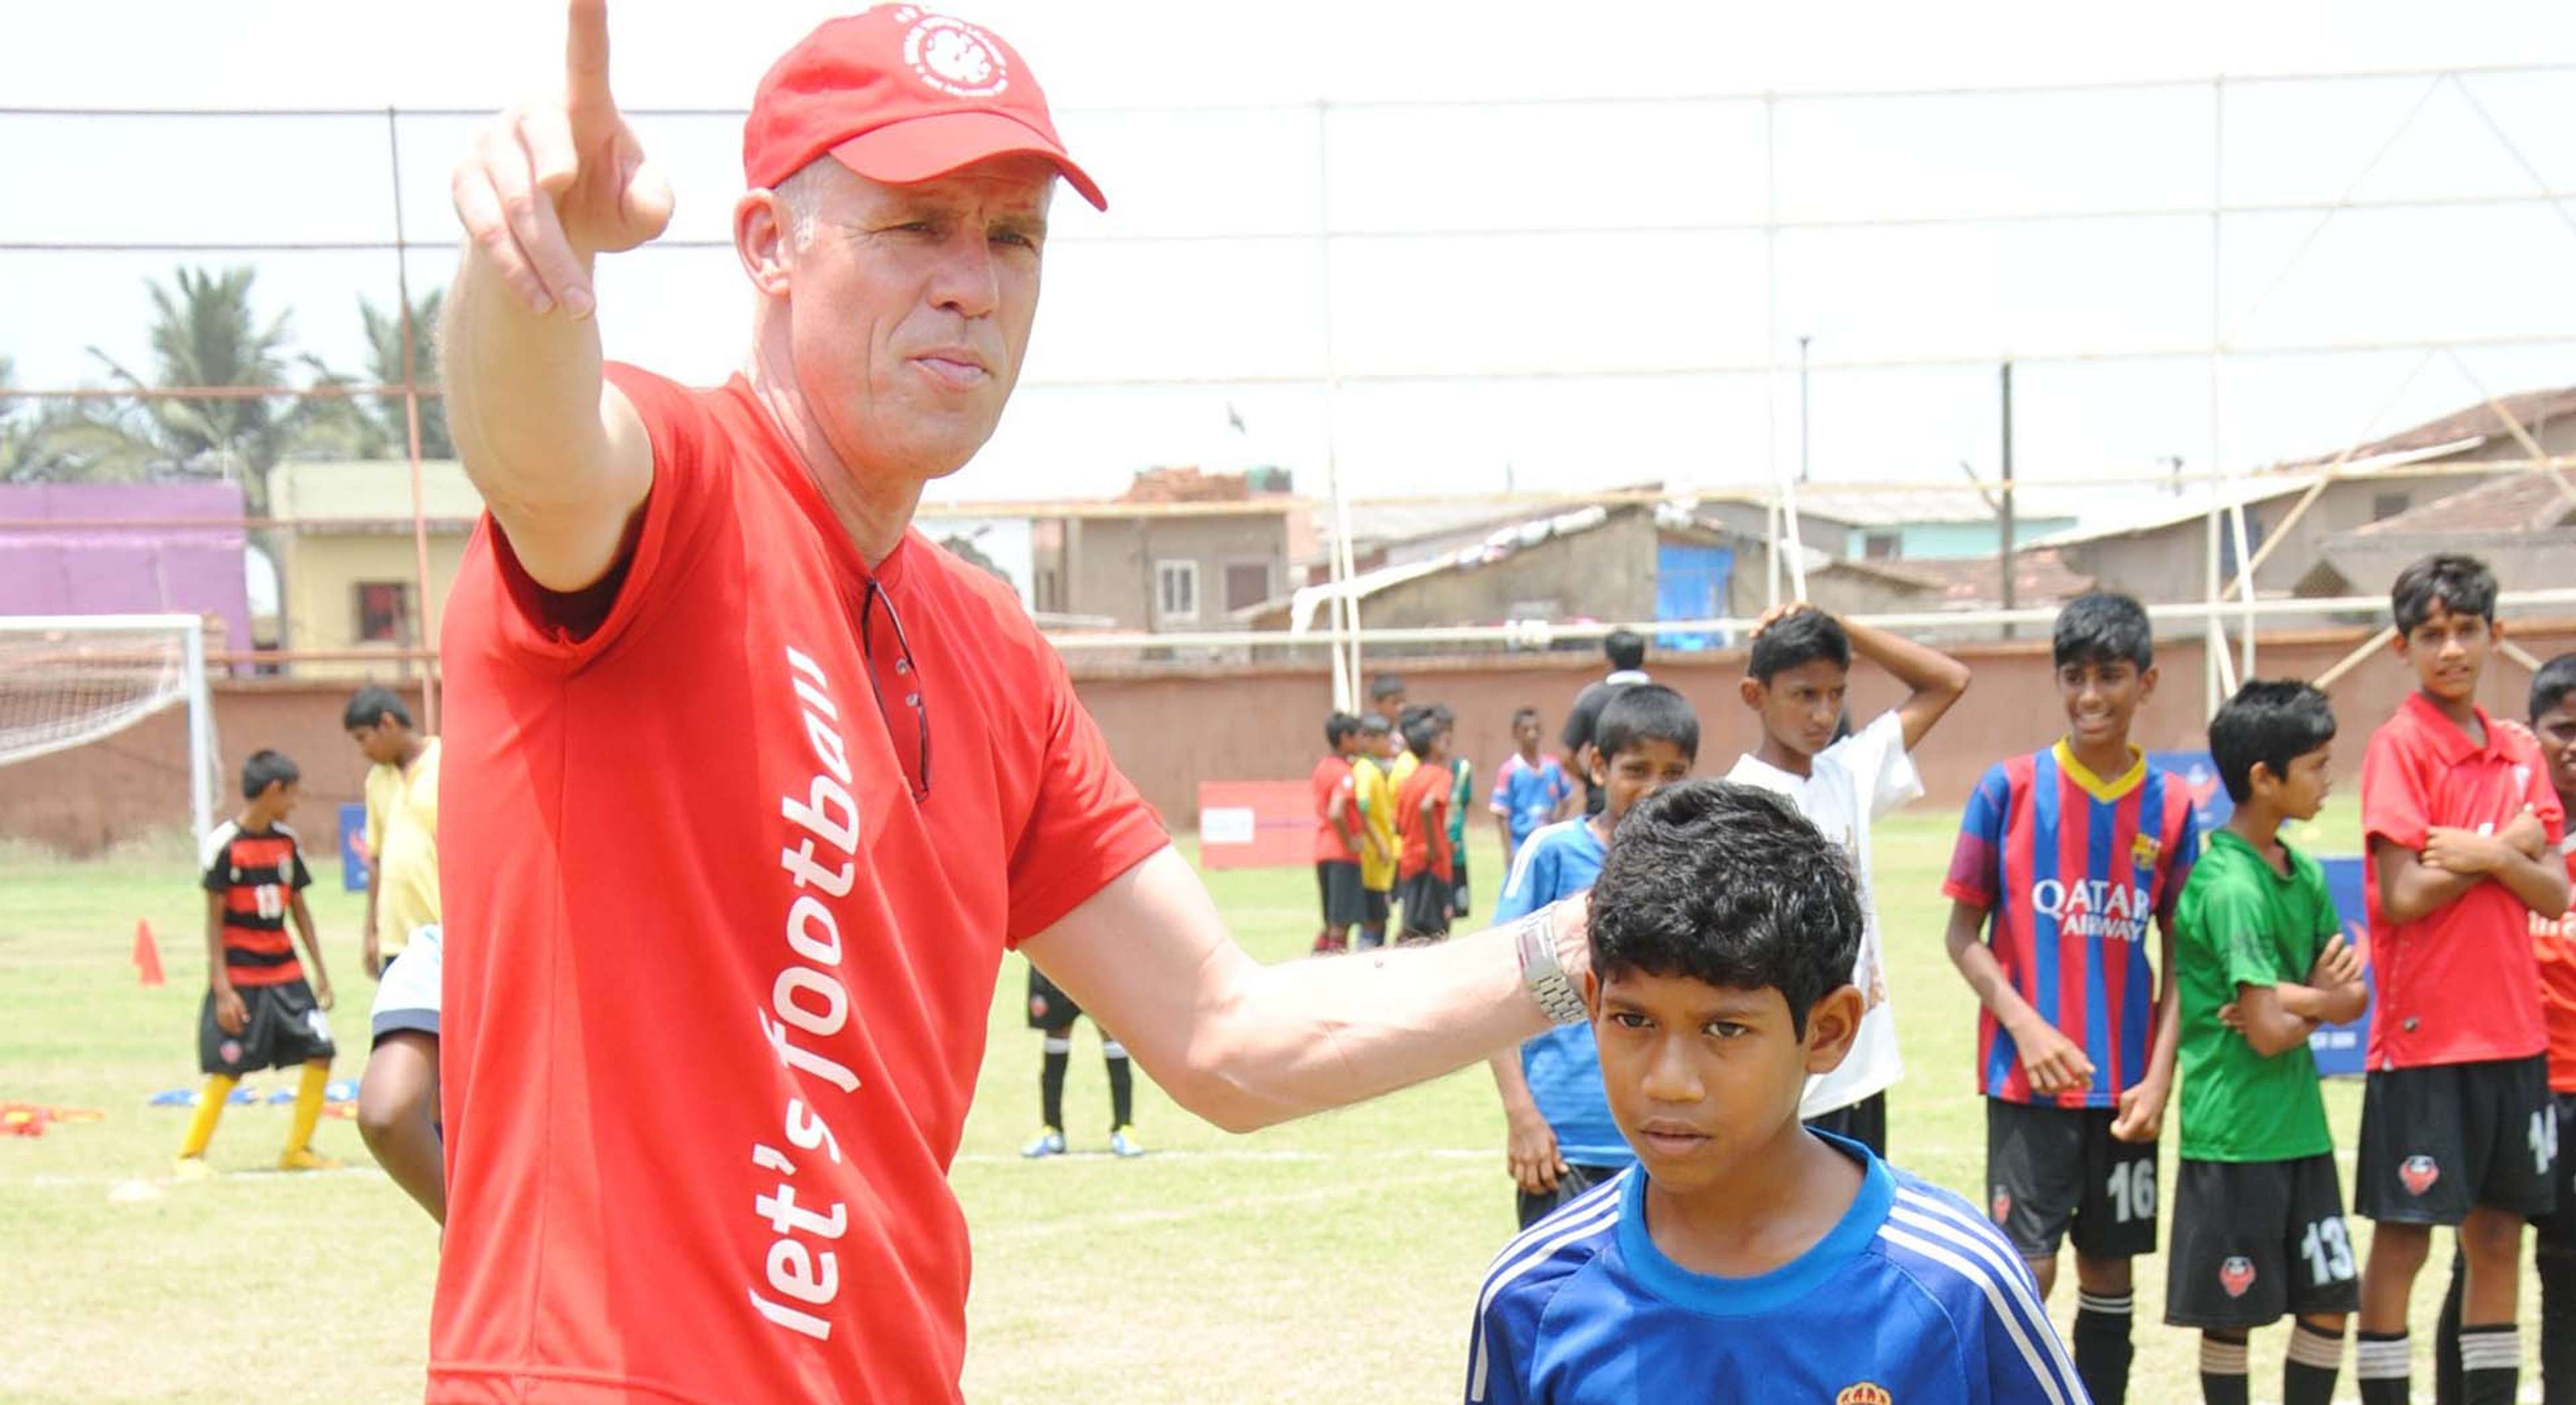 Piet Hubers FC Goa Grassroots Development Programme